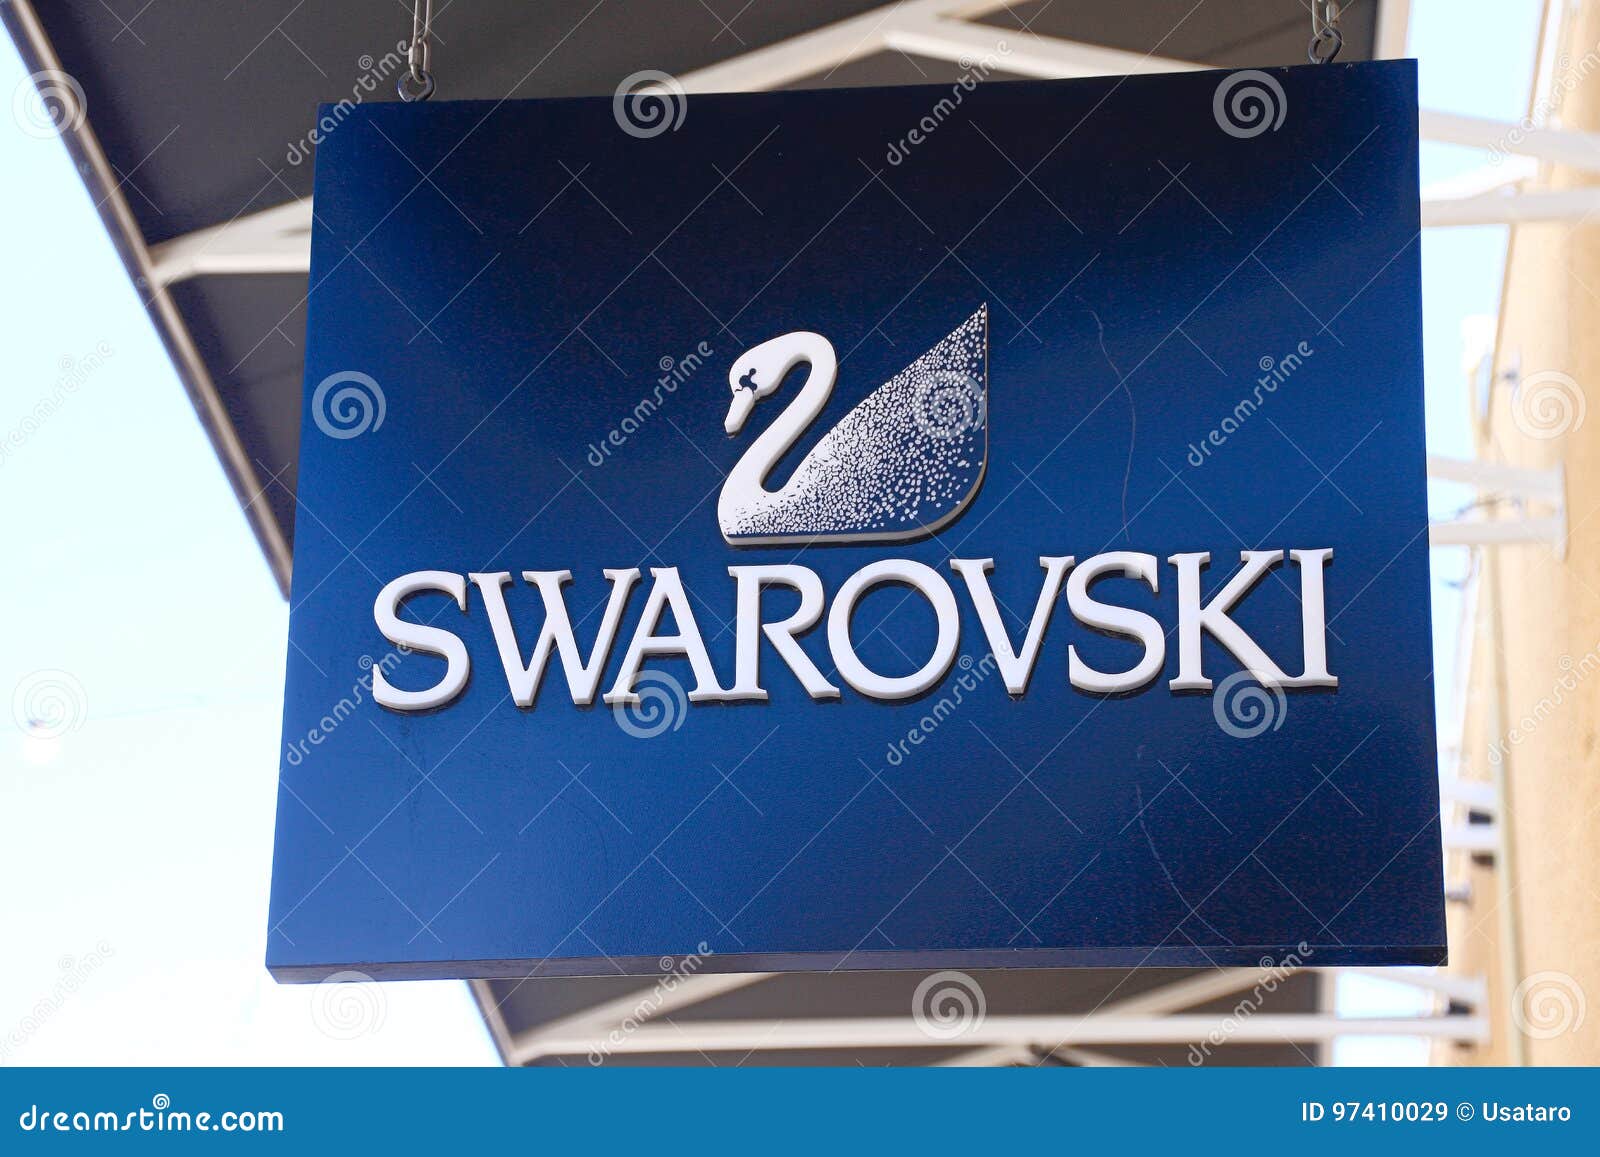 Swarovski Logo png images | PNGWing